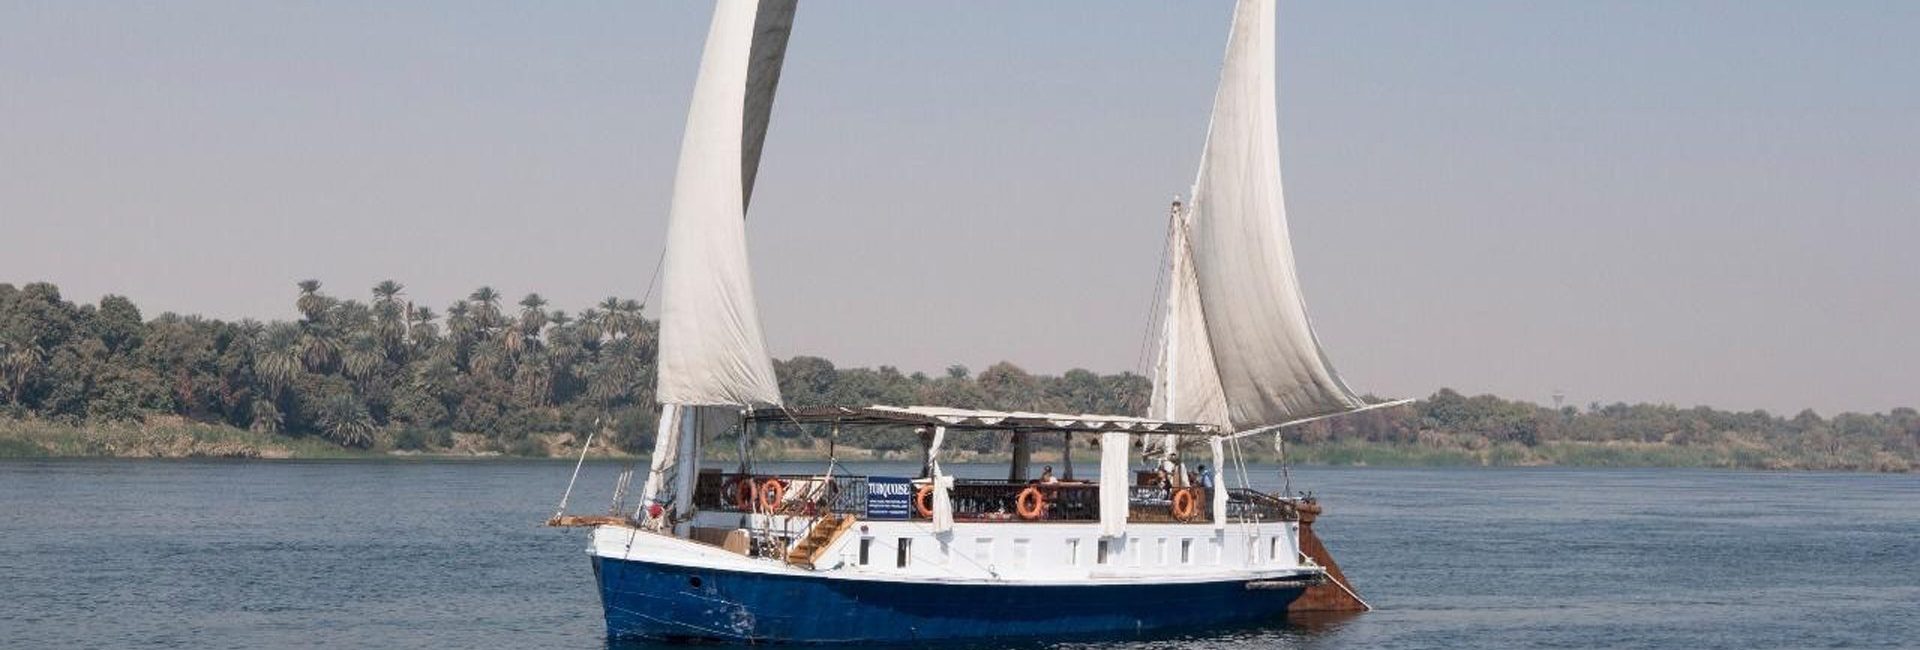 Que faire le soir sur le bateau lors d'une croisière sur le Nil ?